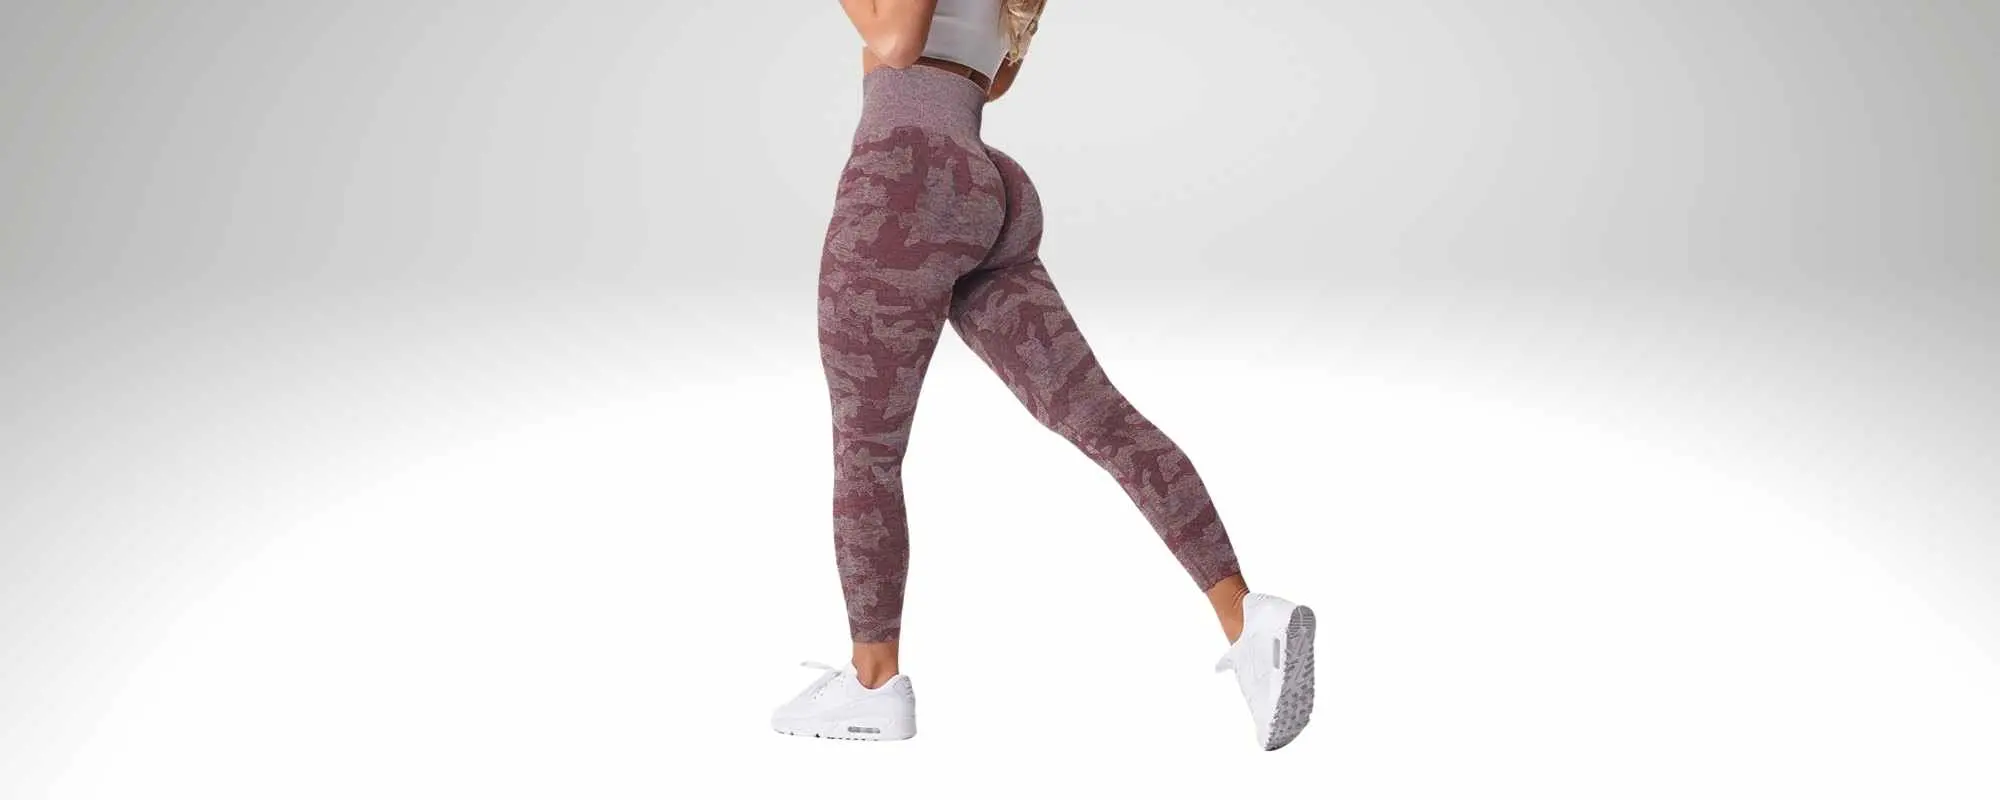 Gymshark Flex leggings 13$ Dupe - Review & Try on 